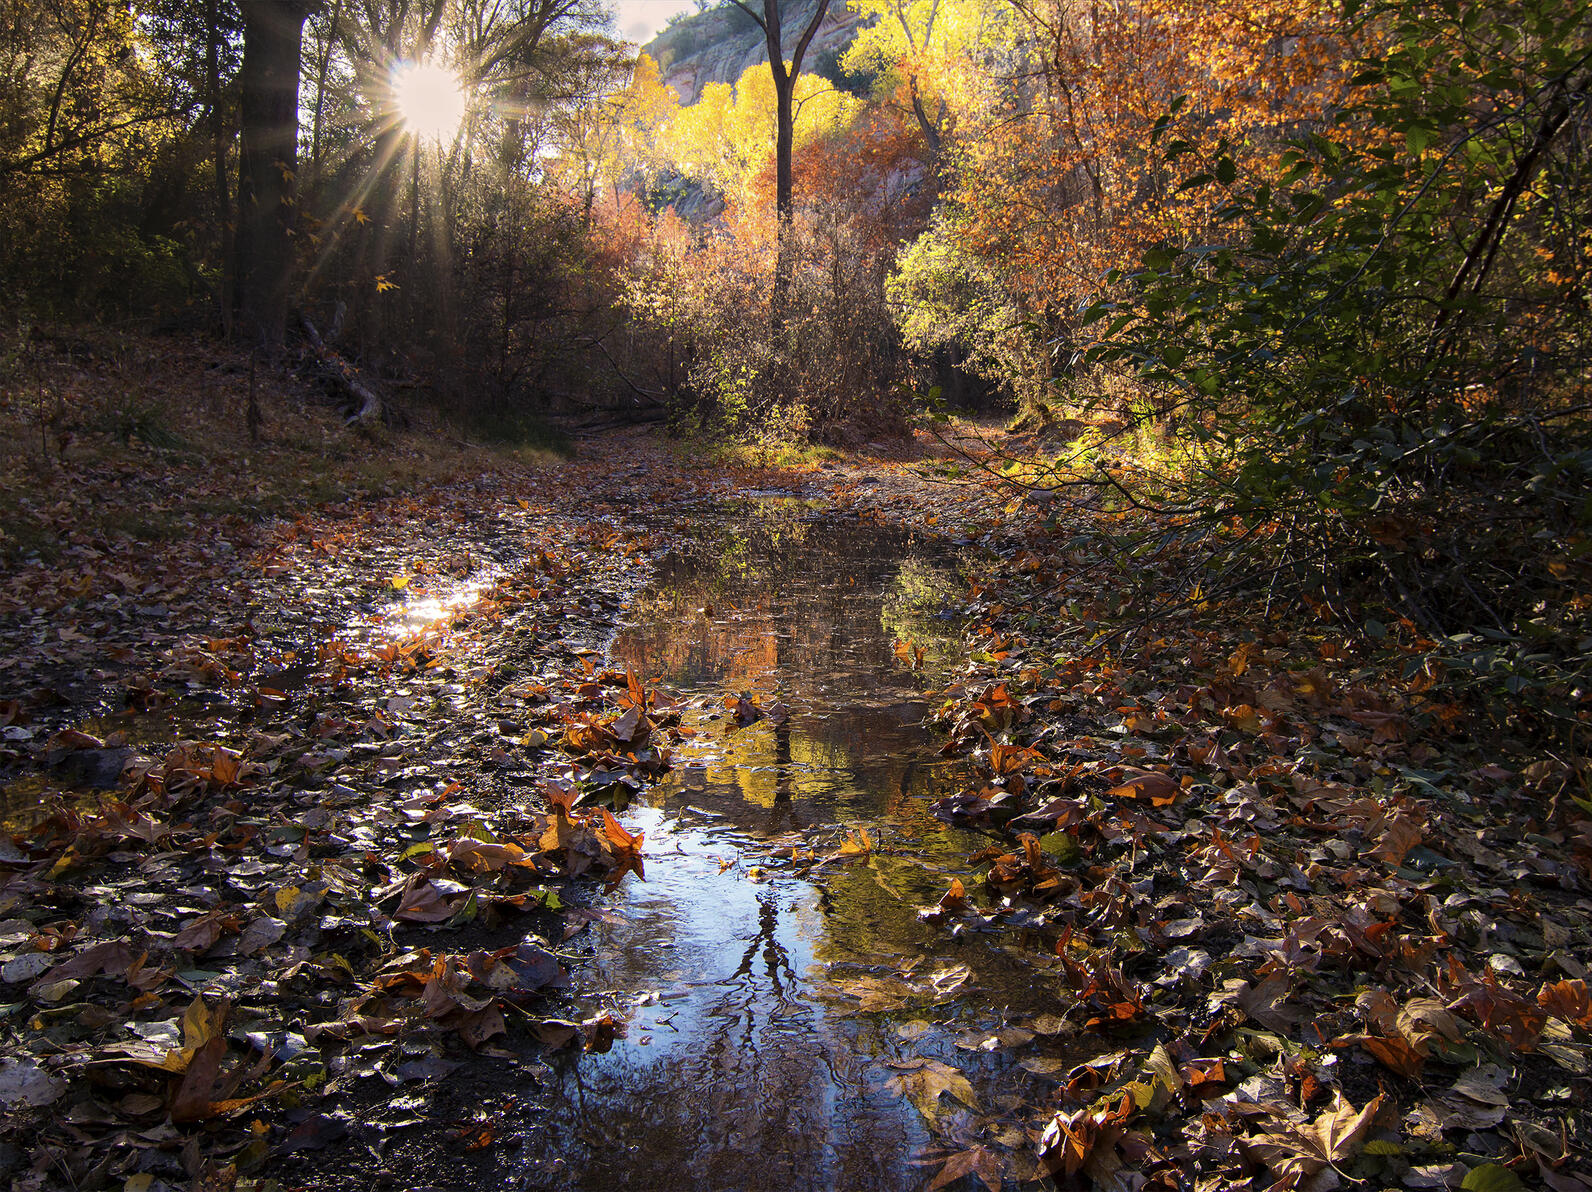 A sunny fall morning on Arizona's Turkey Creek